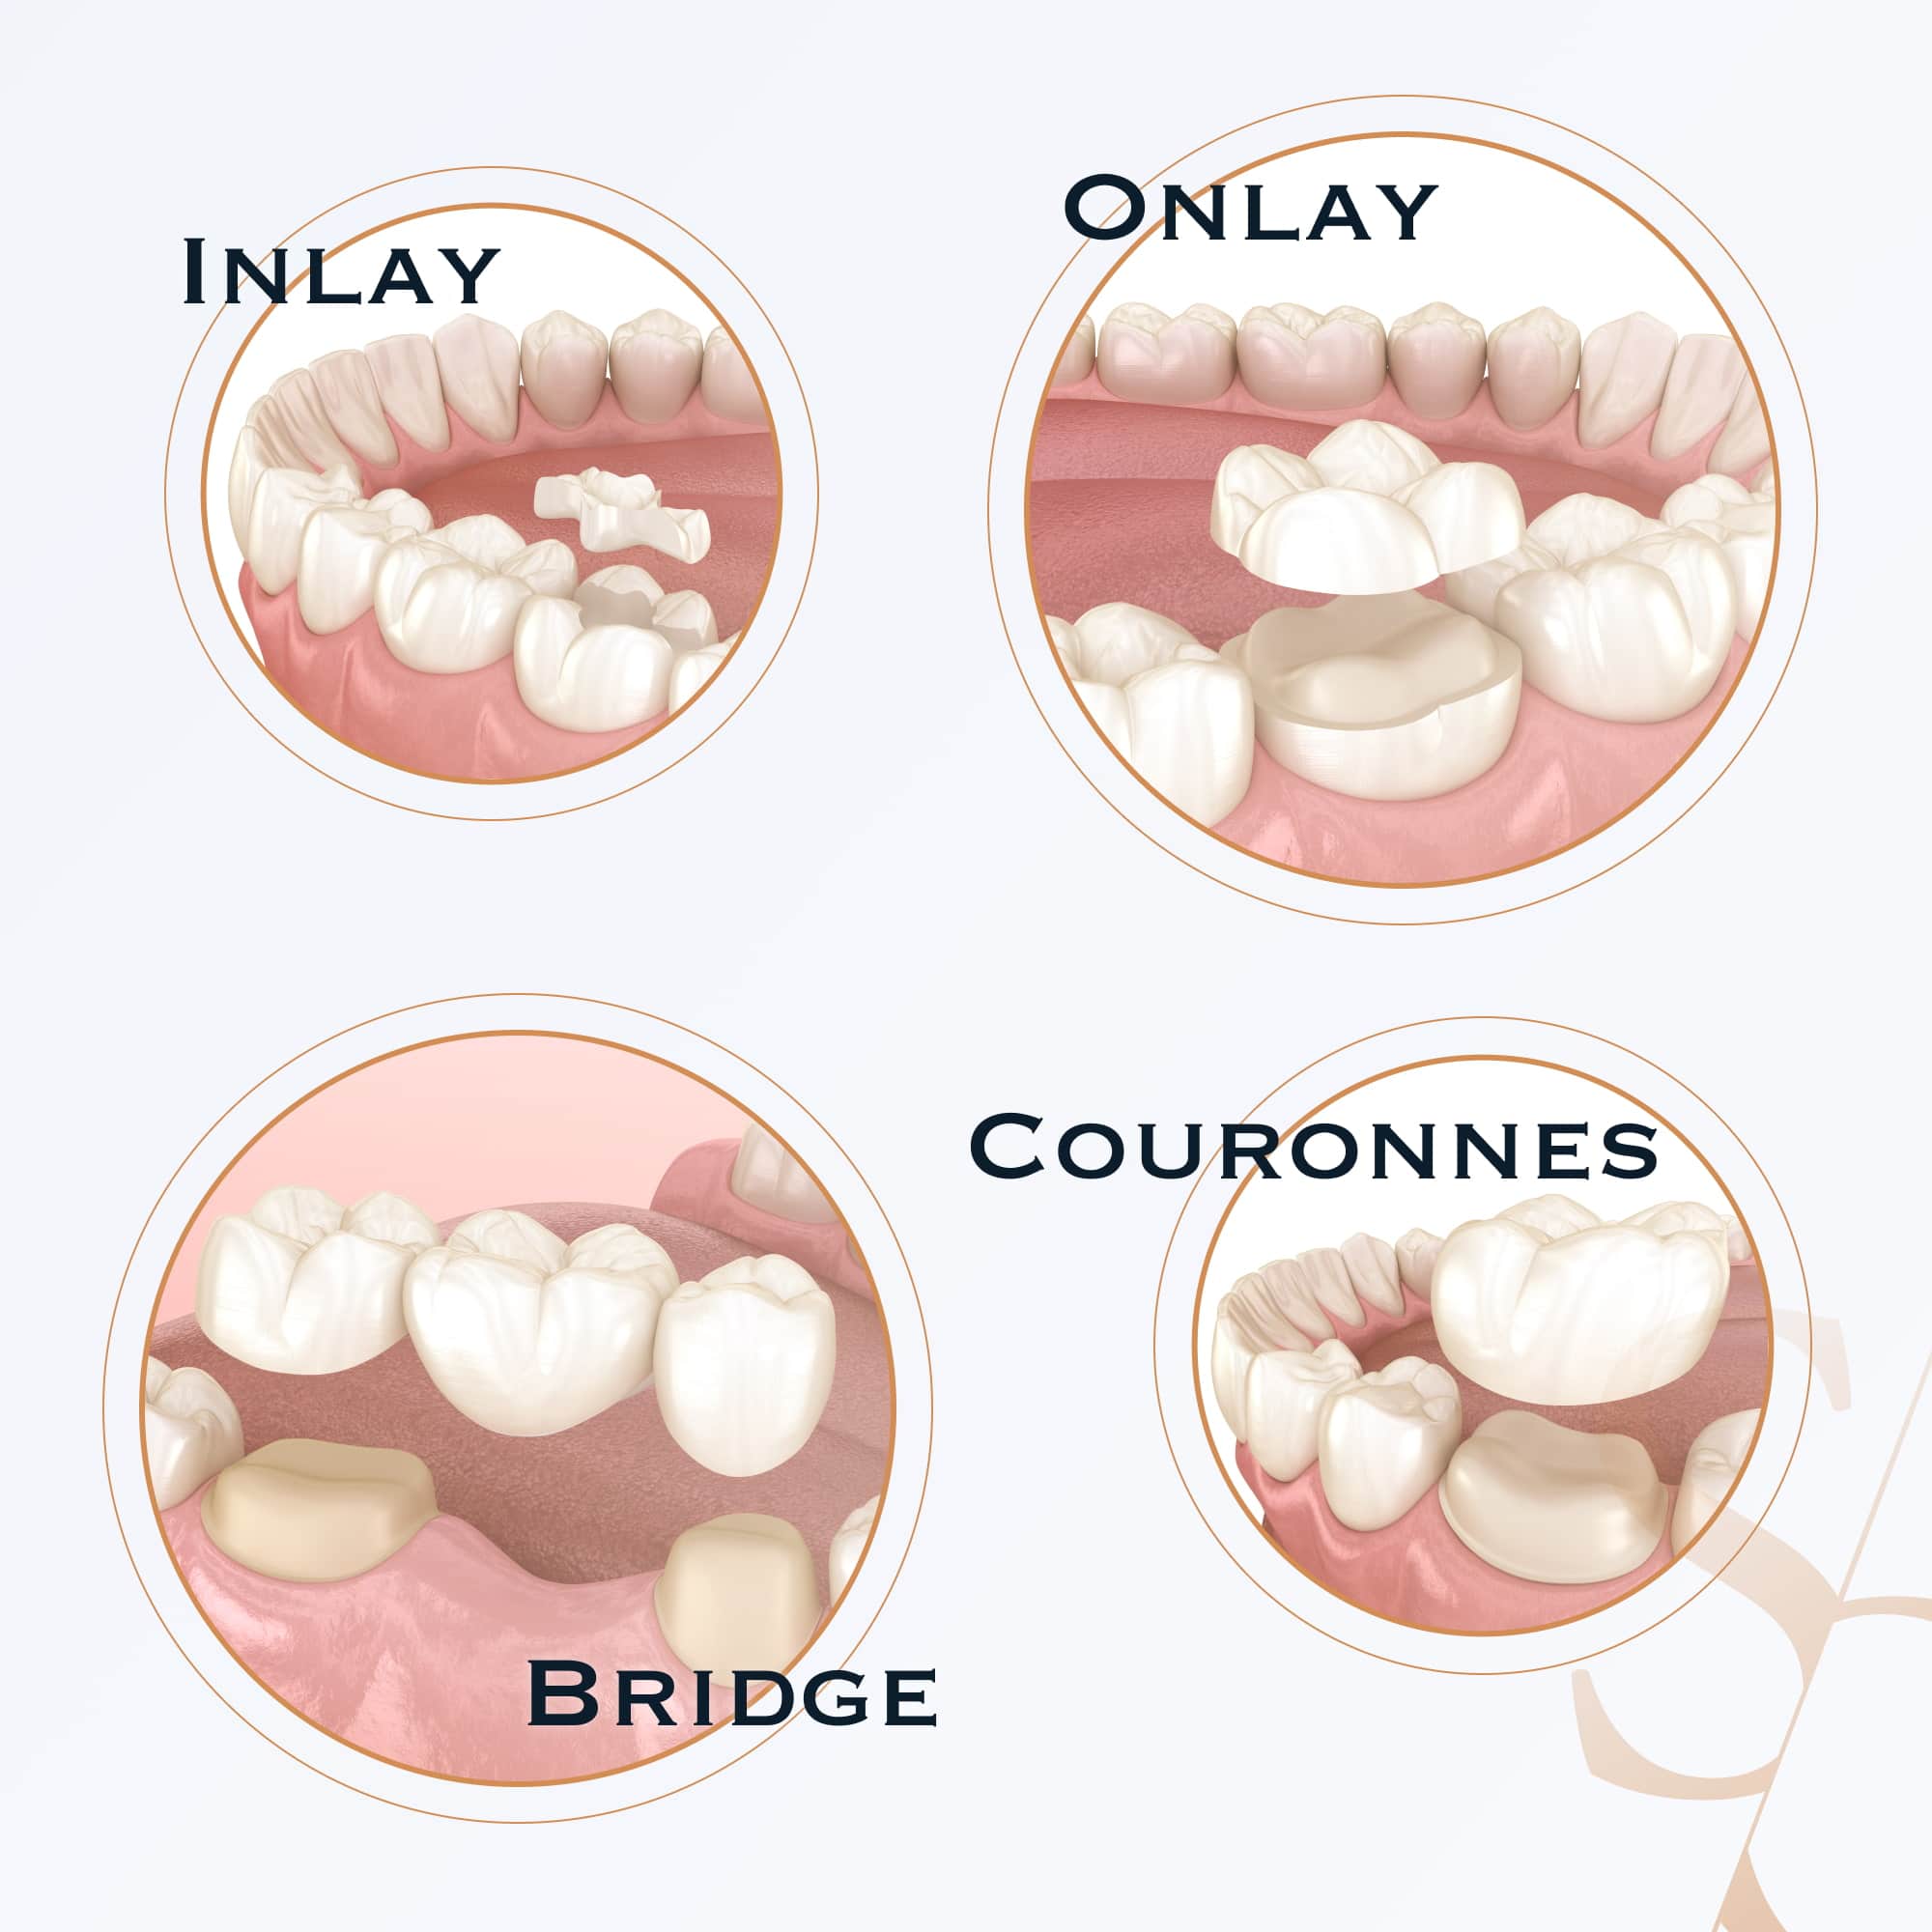 Prothèse dentaire : comment entretenir et fixer son appareil - Hygiène